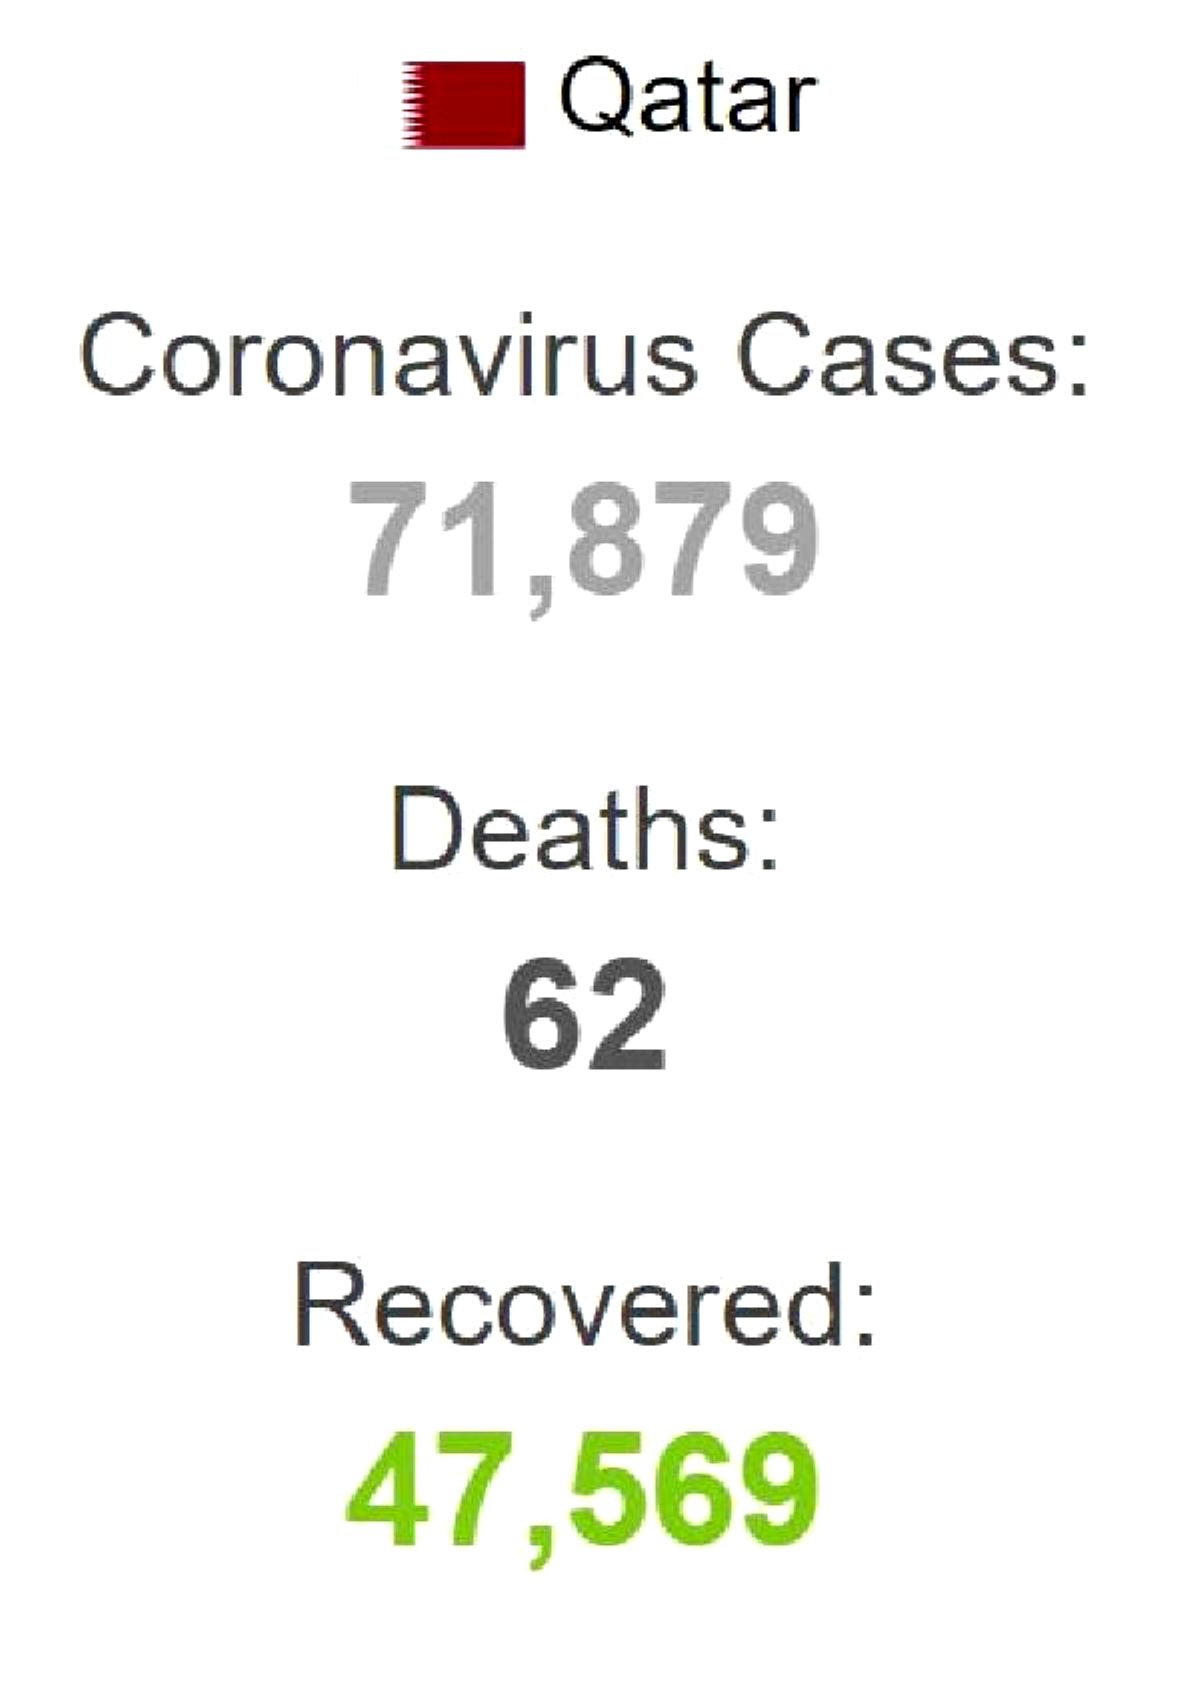 Katar'da son 24 saatte 1,721 ki?i daha koronavirse yakaland?